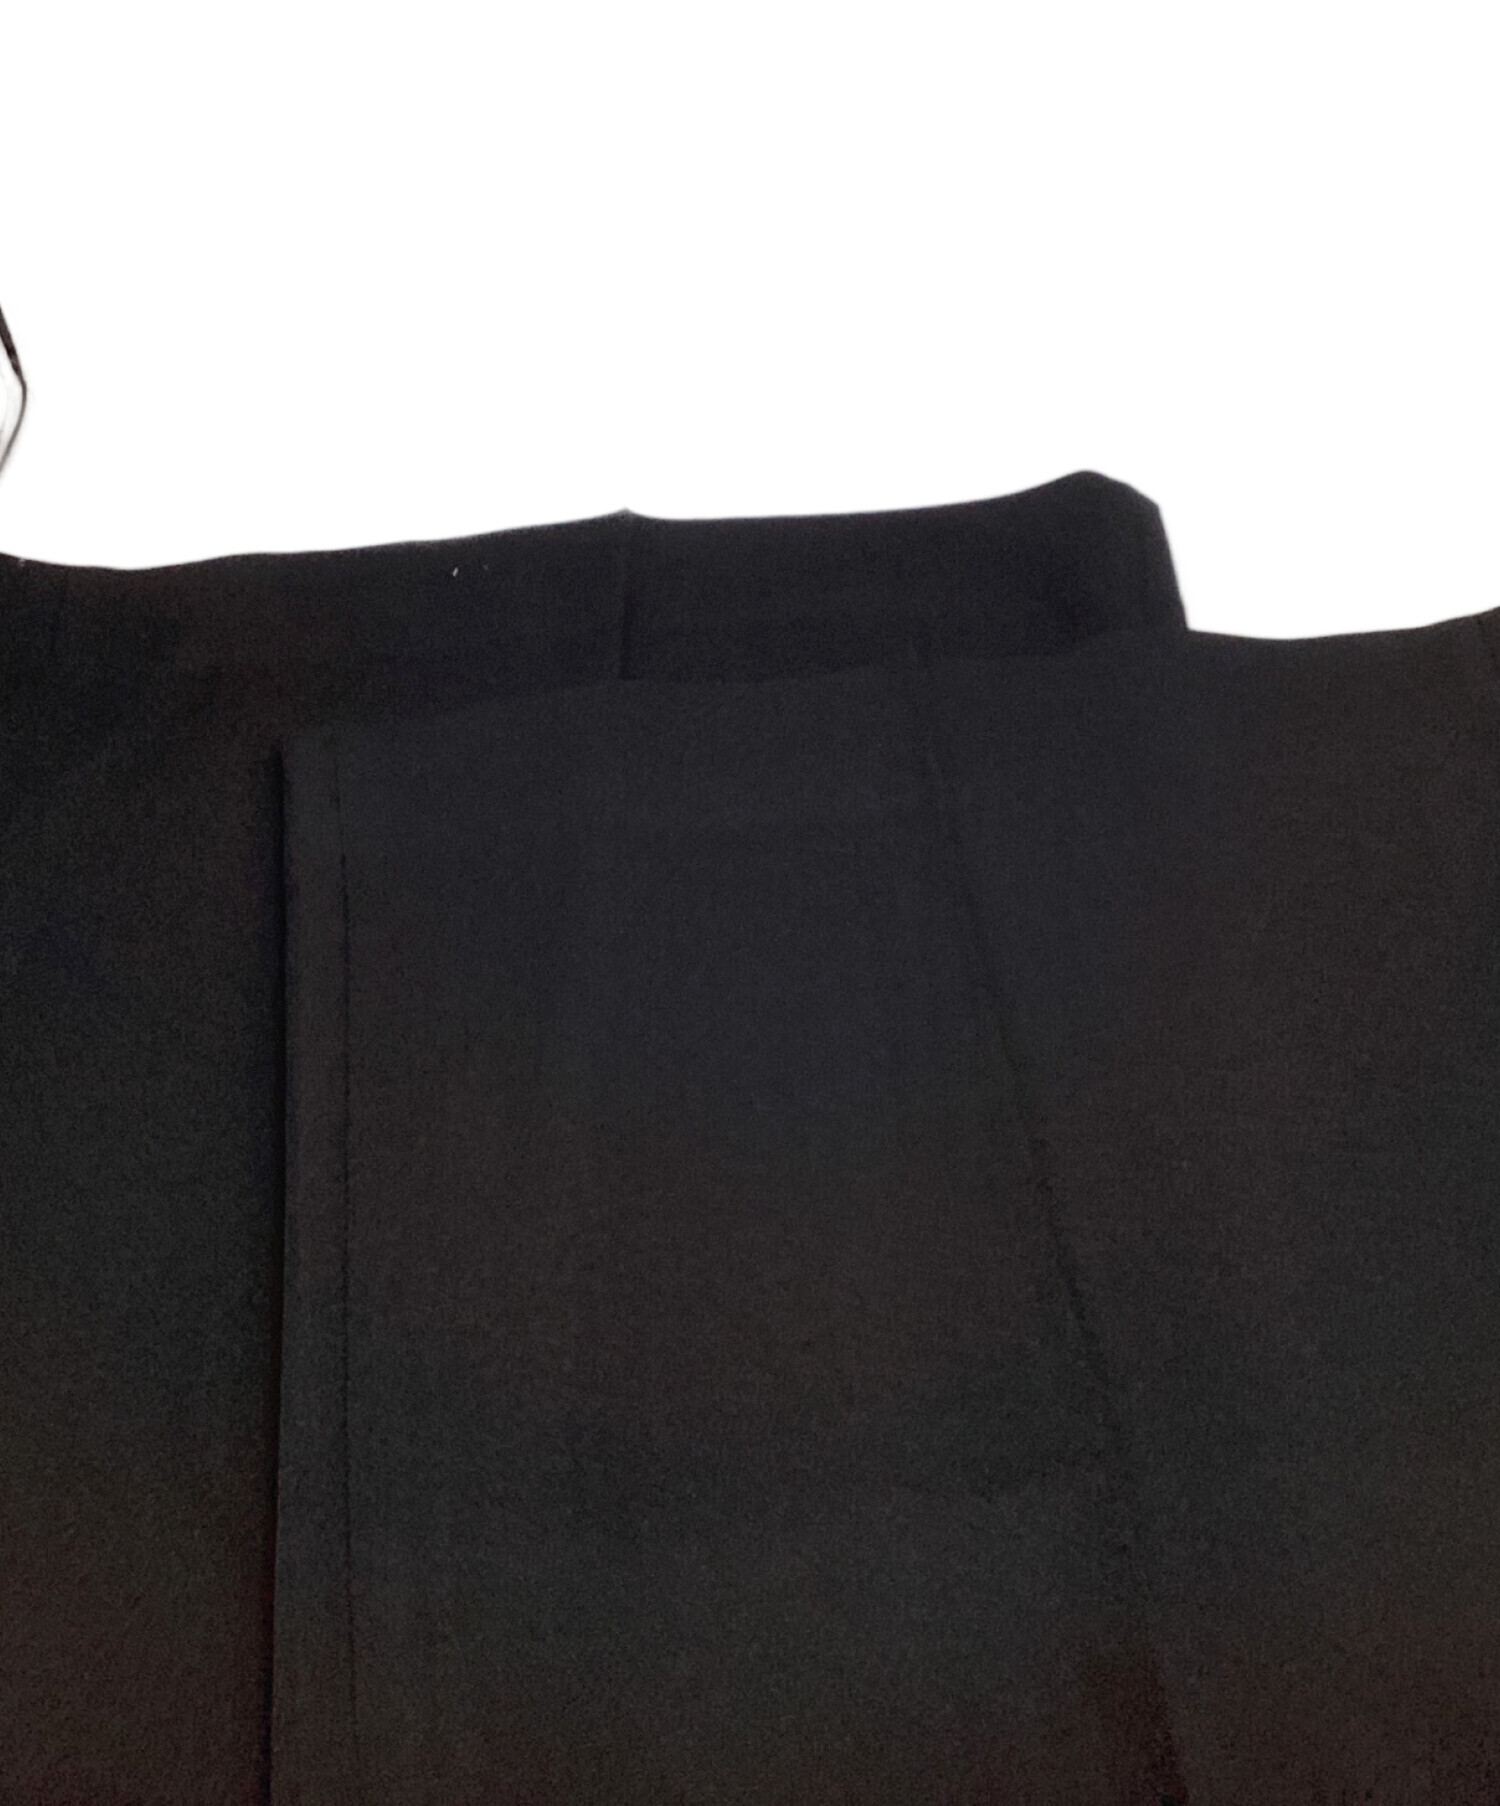 HARDY NOIR (アルディーノアール) カシドスワイドパンツ ブラック サイズ:36 未使用品